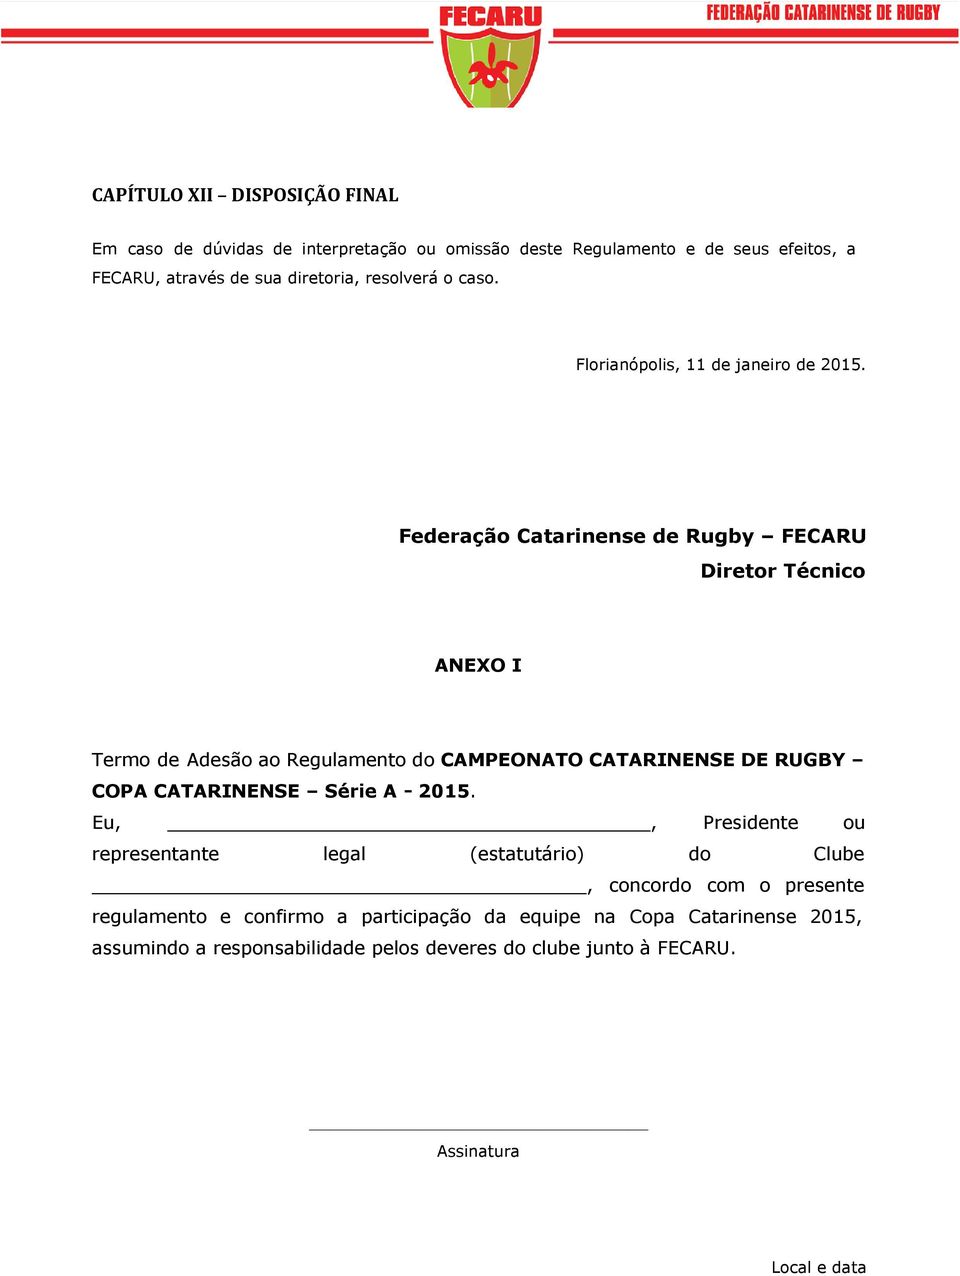 Federação Catarinense de Rugby FECARU Diretor Técnico ANEXO I Termo de Adesão ao Regulamento do CAMPEONATO CATARINENSE DE RUGBY COPA CATARINENSE Série A -